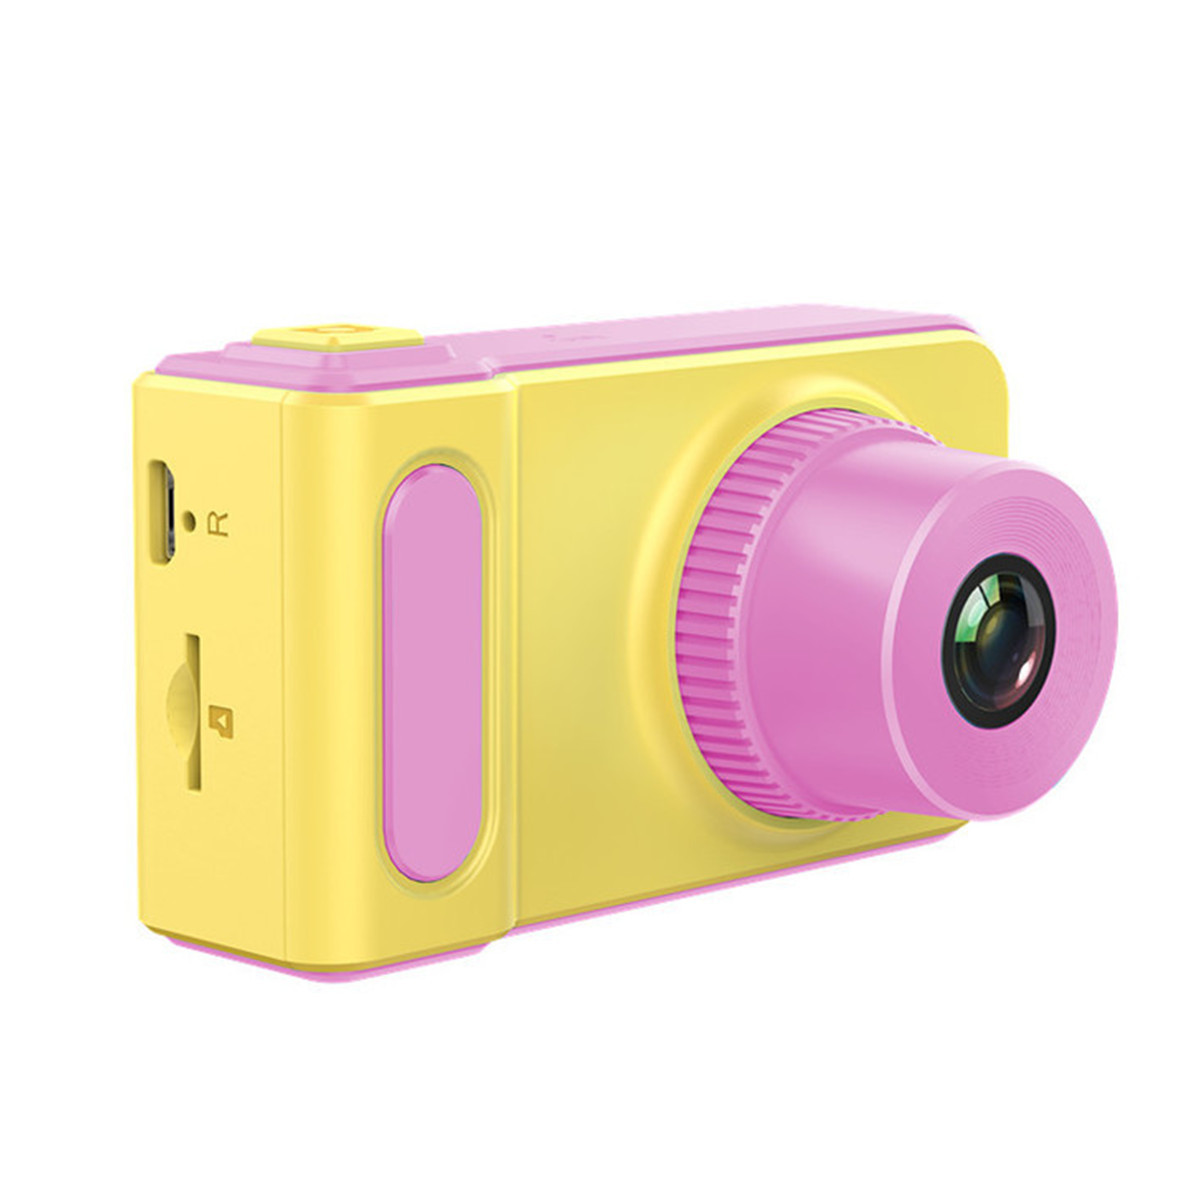 กล้องถ่ายรูปสำหรับเด็ก กล้องดิจิตอลสำหรับเด็ก Children's digital camera